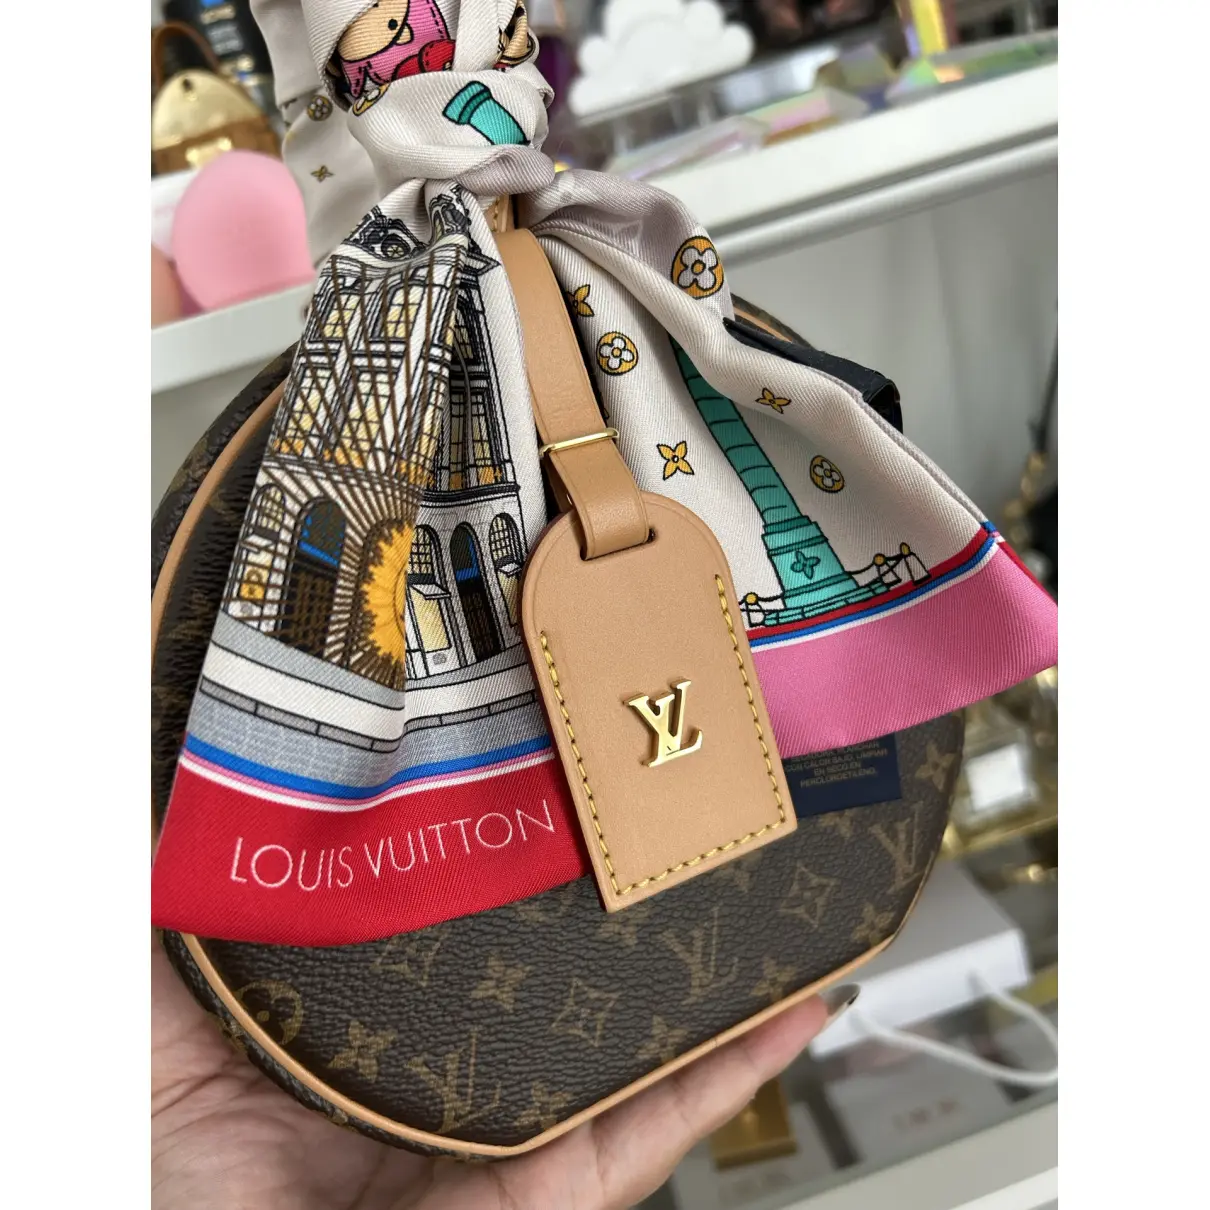 Buy Louis Vuitton Petite Boîte Chapeau leather clutch bag online